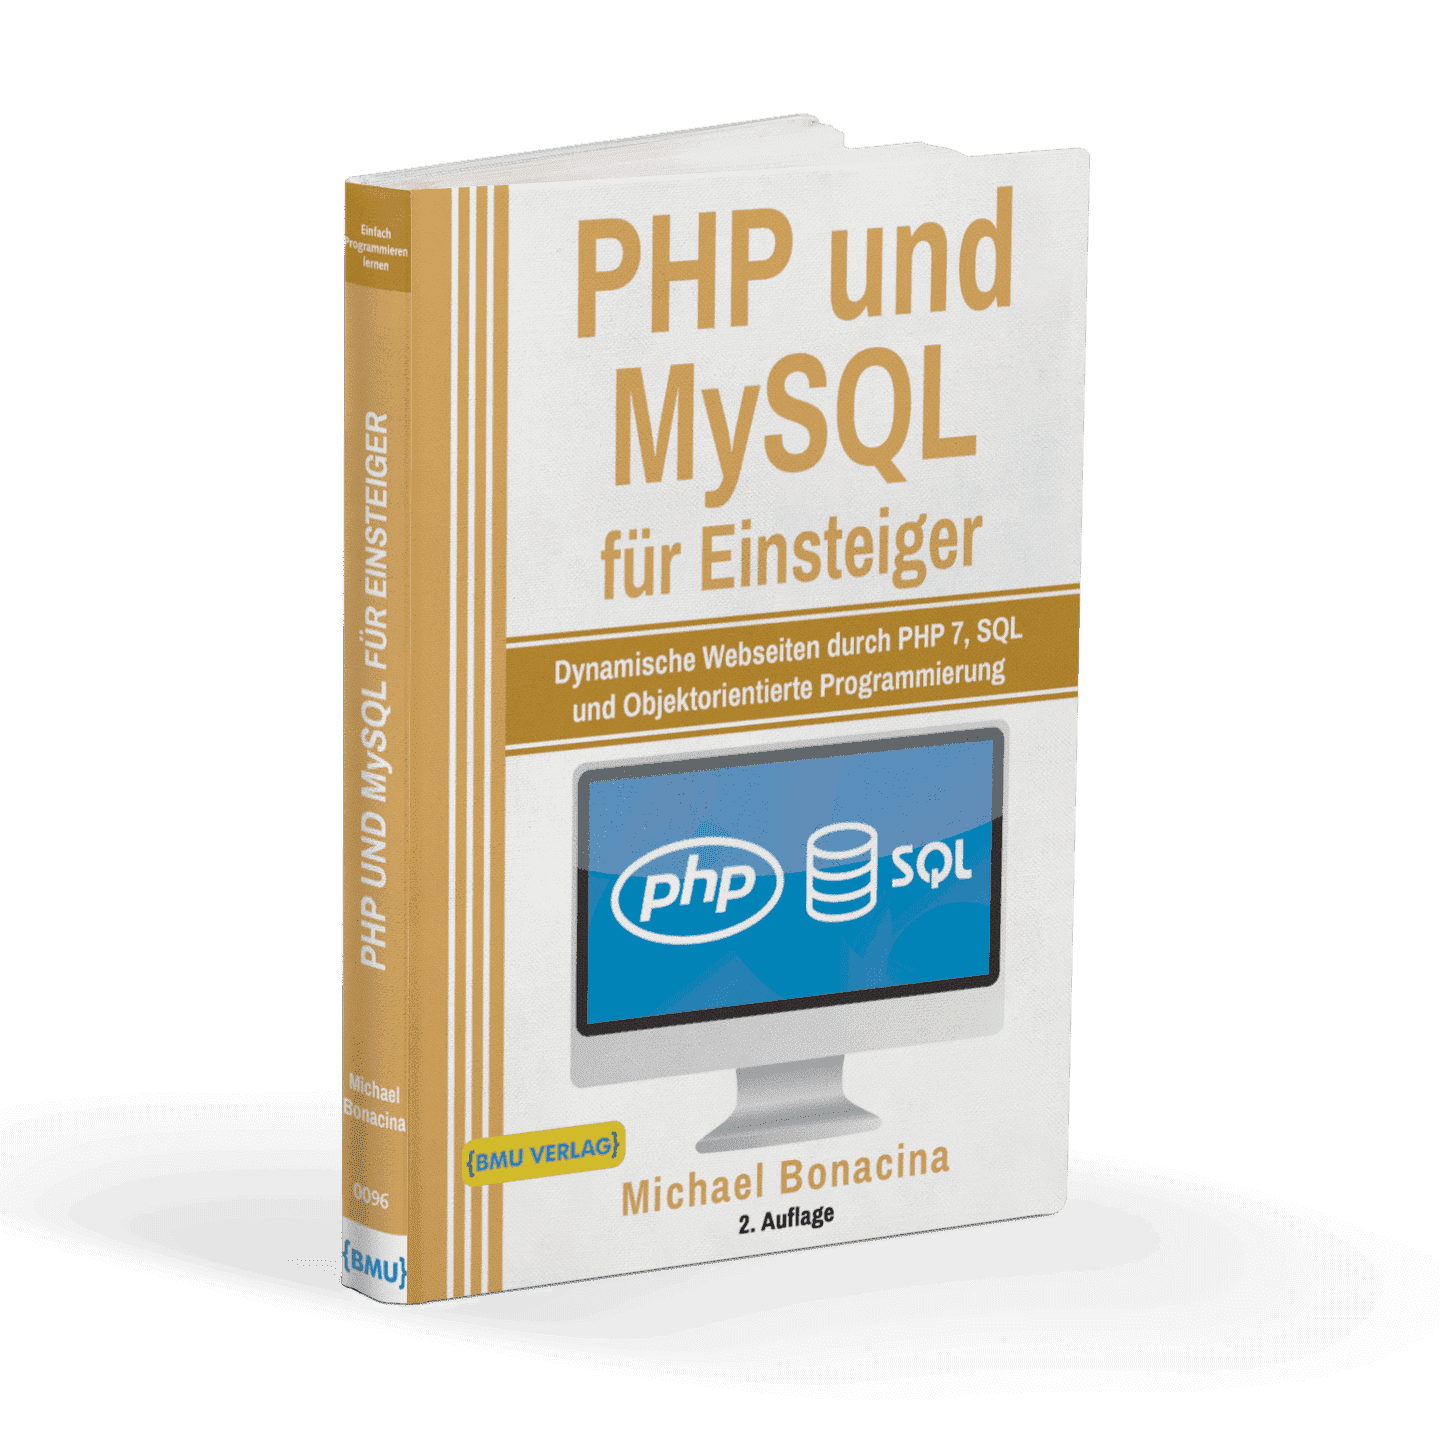 PHP und MySQL für Einsteiger: Dynamische Webseiten durch PHP 7 und SQL - AZ-Delivery